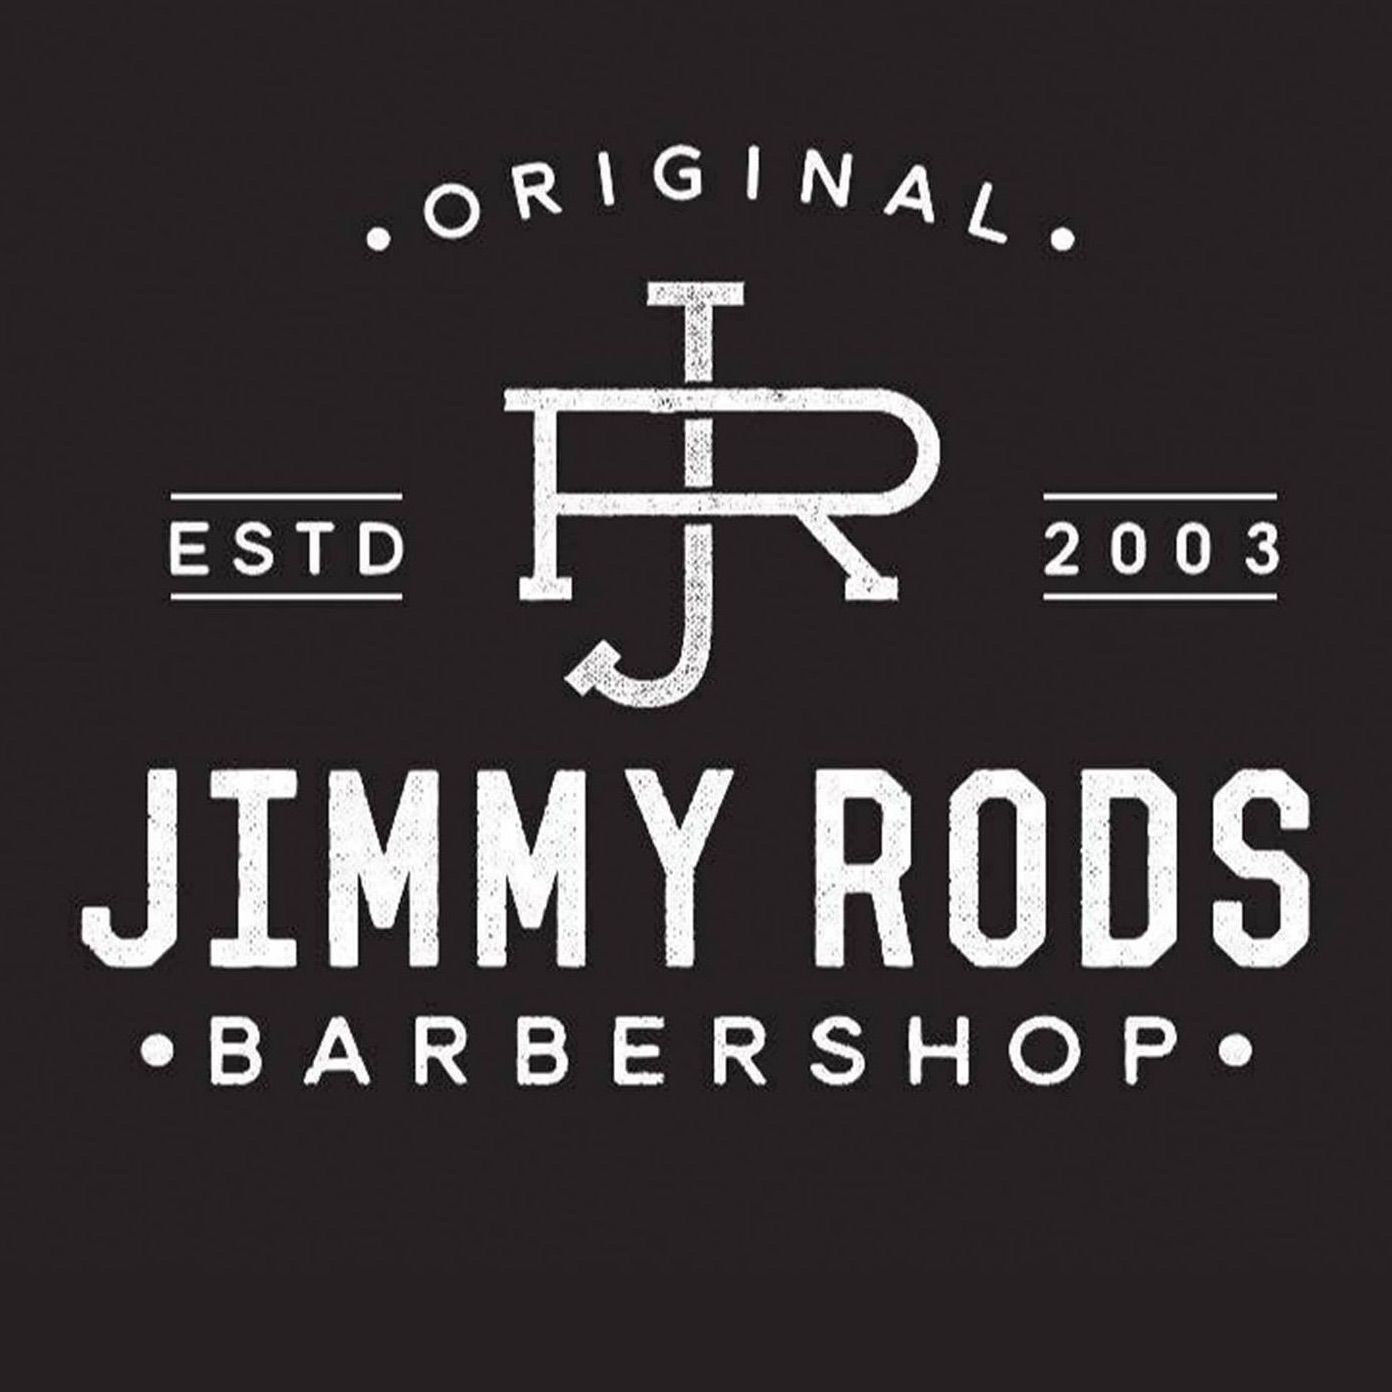 Jimmy Rod's Barbershop // Chermside, Shop 345, Westfield Chermside, Gympie Road, 4032, Brisbane